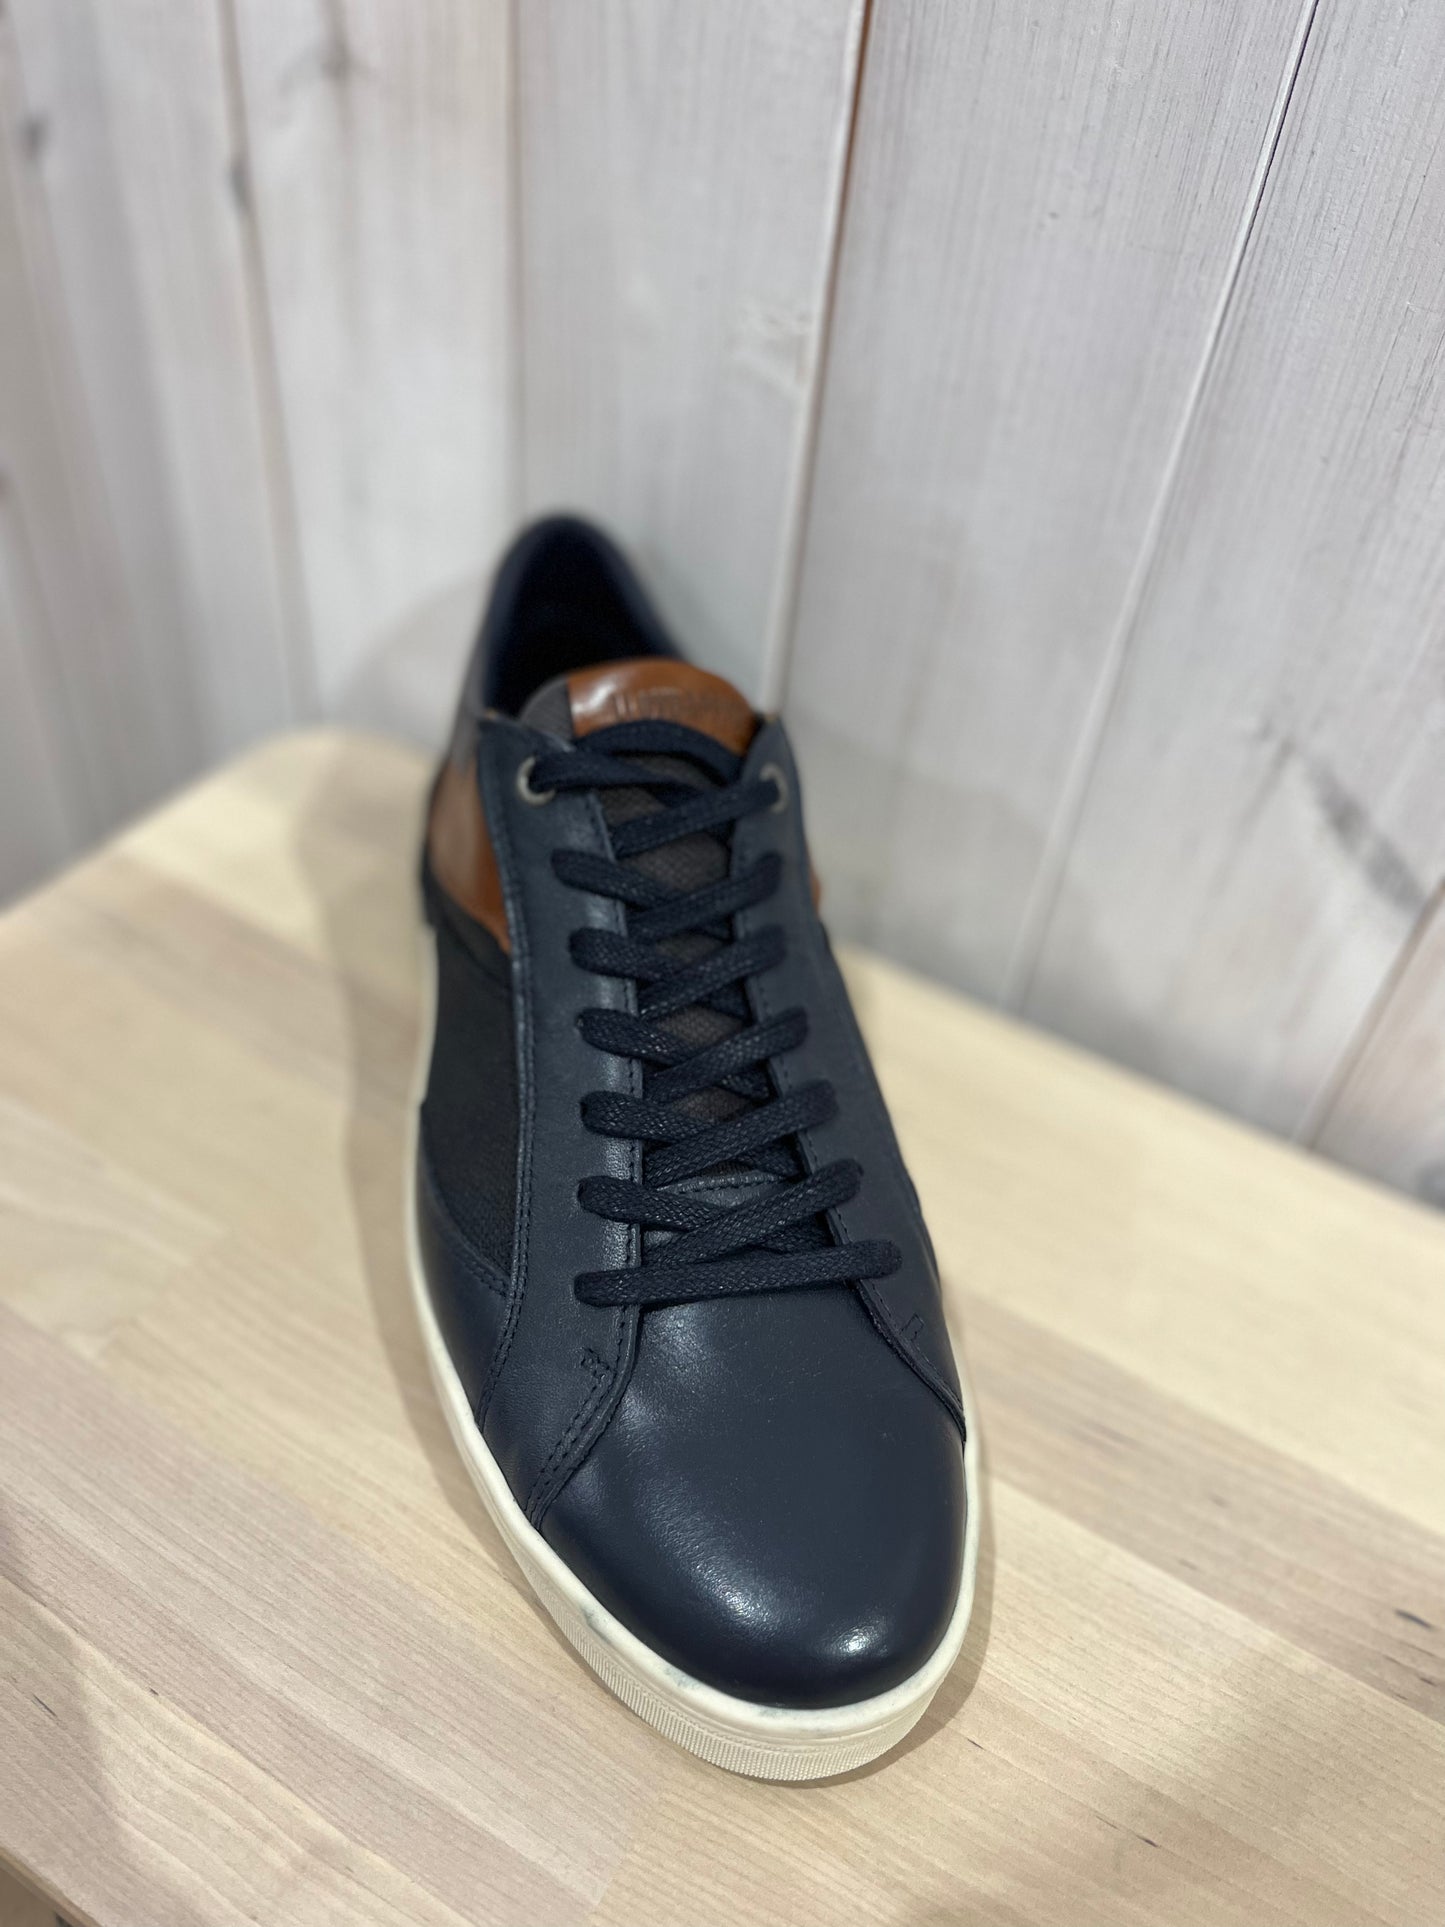 Lloyd & Pryce -Fenwick Leather Upper Shoe